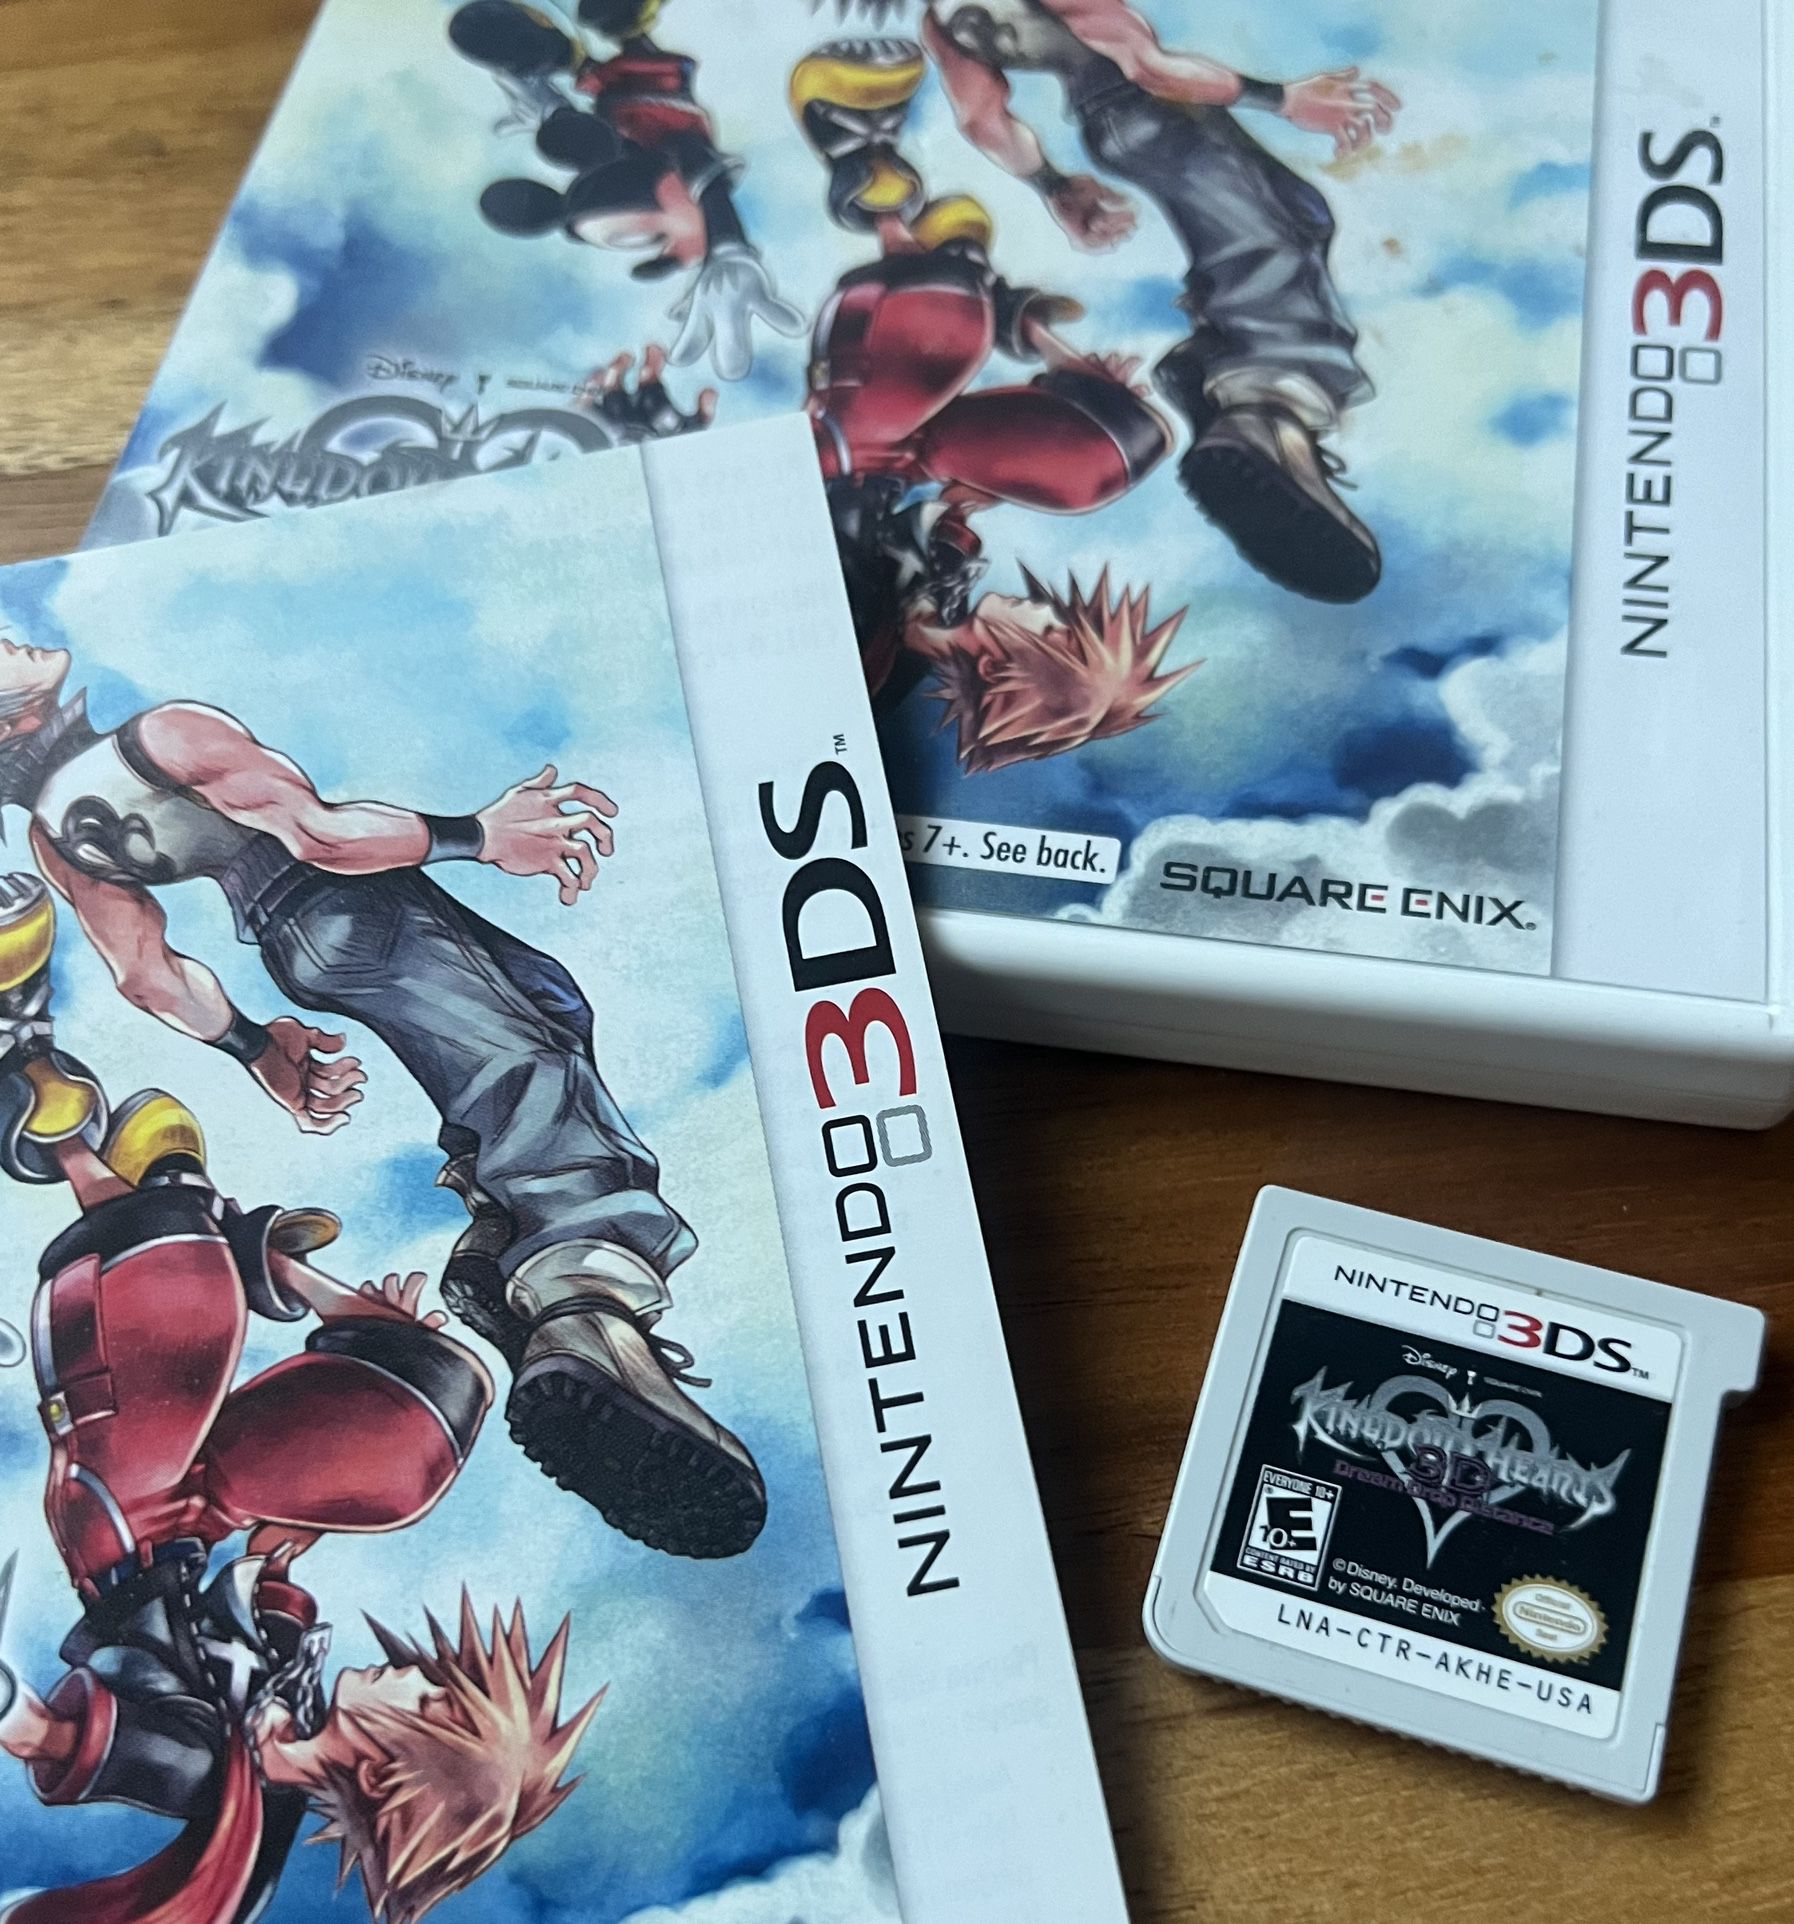  Kingdom Hearts 3D: Dream Drop Distance Nintendo 3DS 2012 Manual Case Authentic